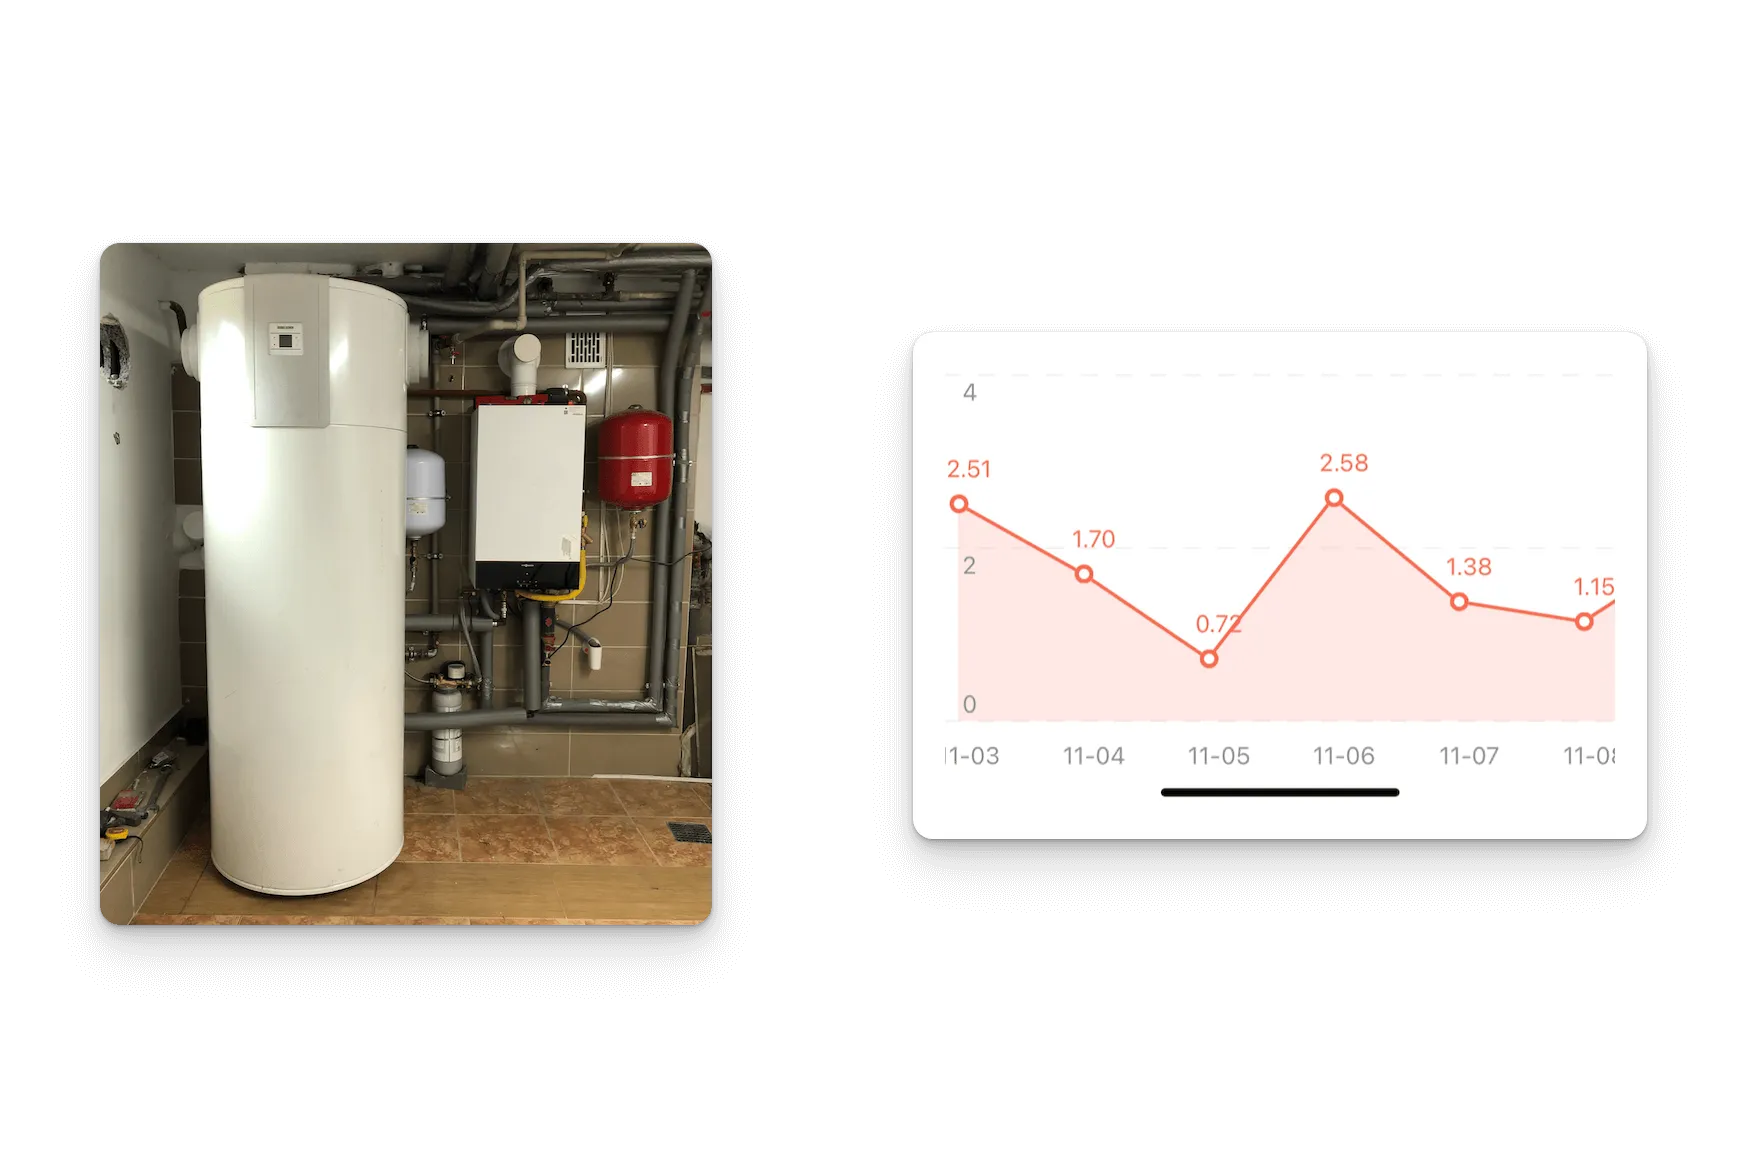 Pompa ciepła i kocioł gazowy w kotłowni, oraz wykres dziennego zużycia prądu przez pompę ciepła w kWh.